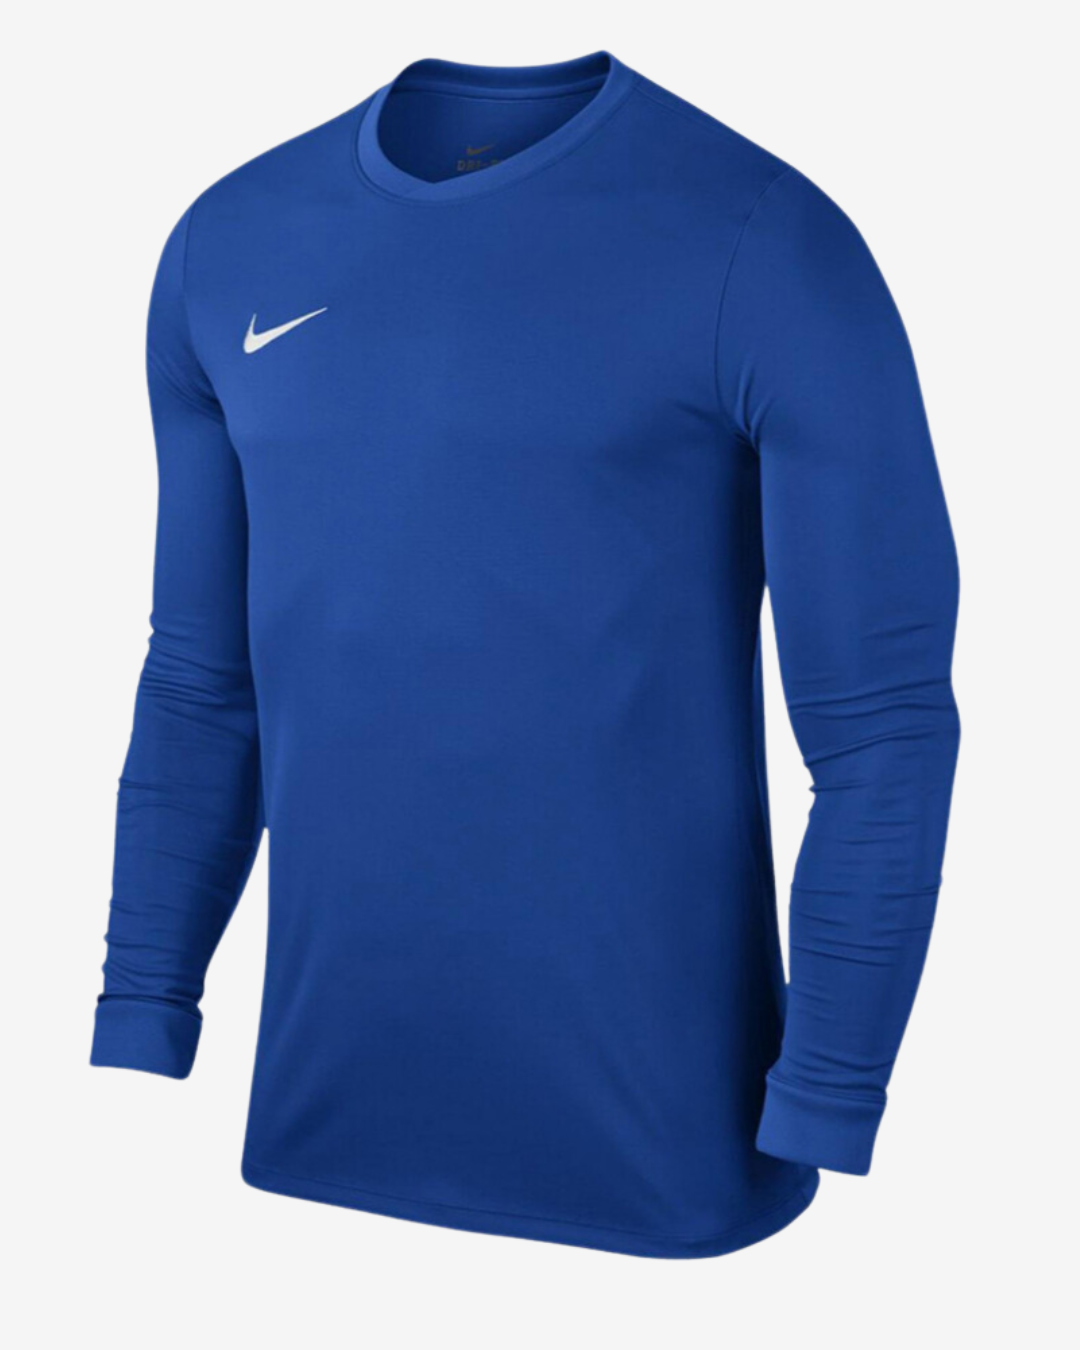 Billede af Nike Dri-fit park 7 langærmet t-shirt - Blå - Str. XL - Modish.dk